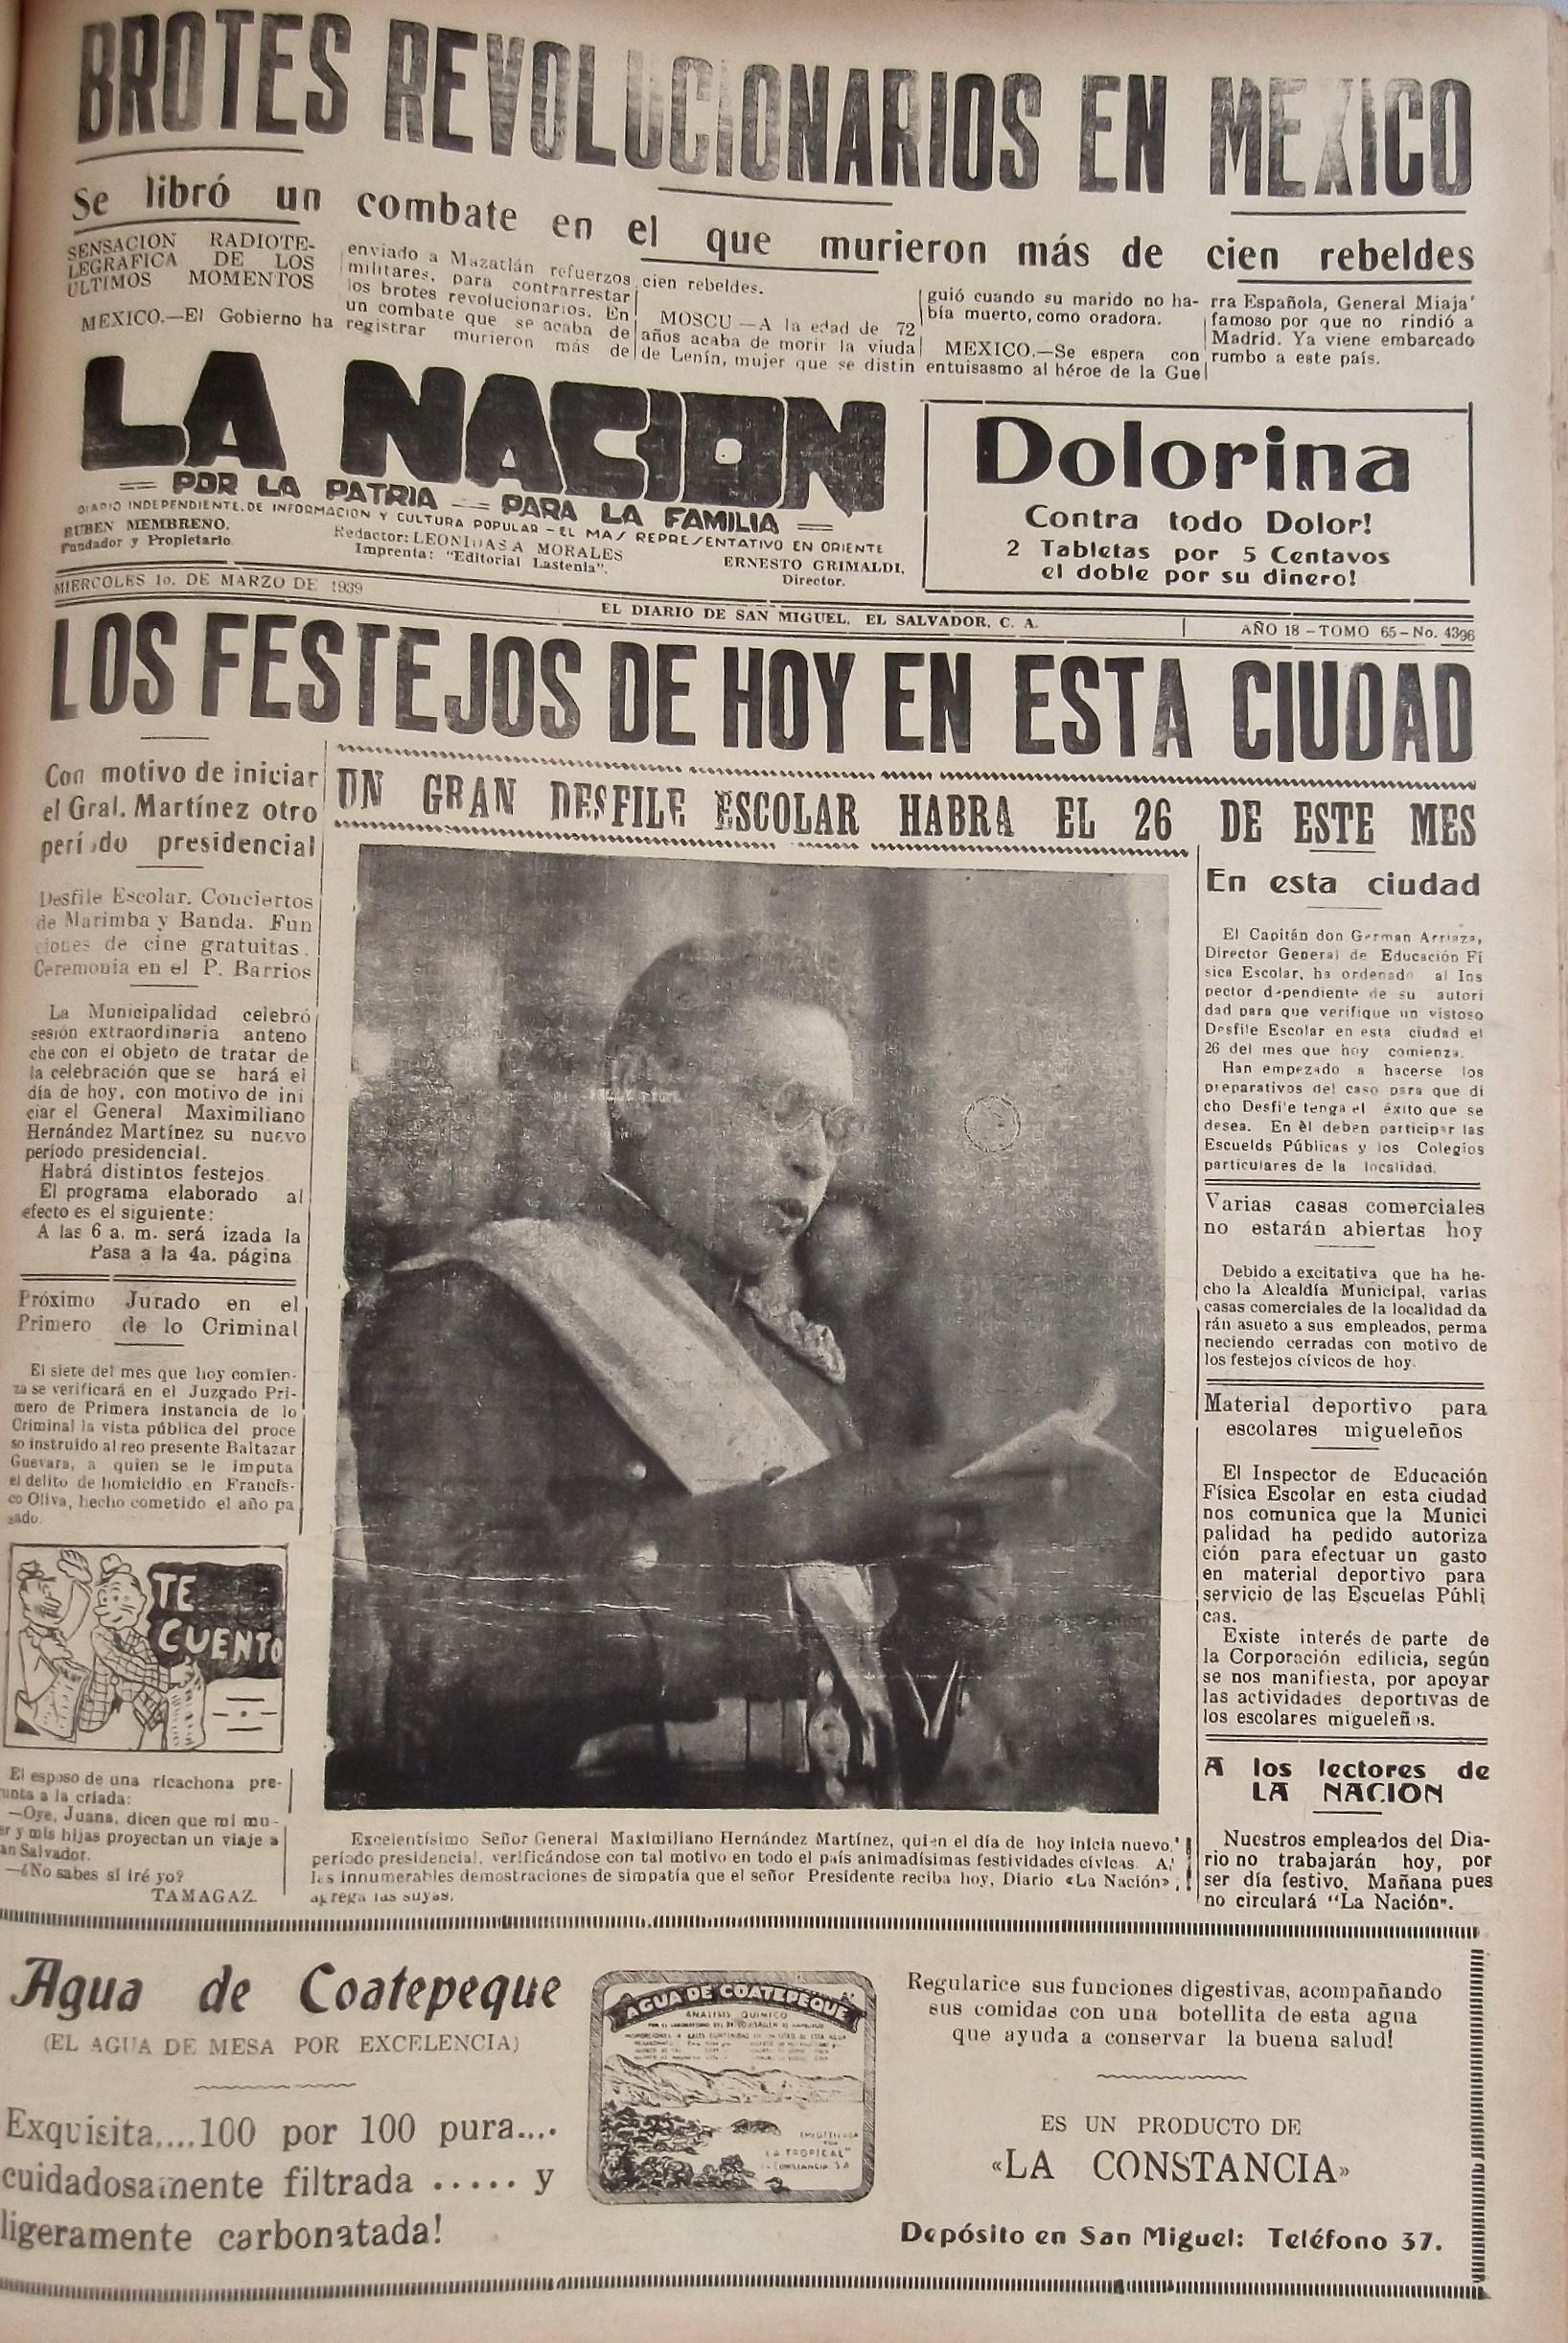 Portada del periódico migueleño La Nación el día de la toma de posesión del general Maximiliano Hernández Martínez, marzo de 1939.